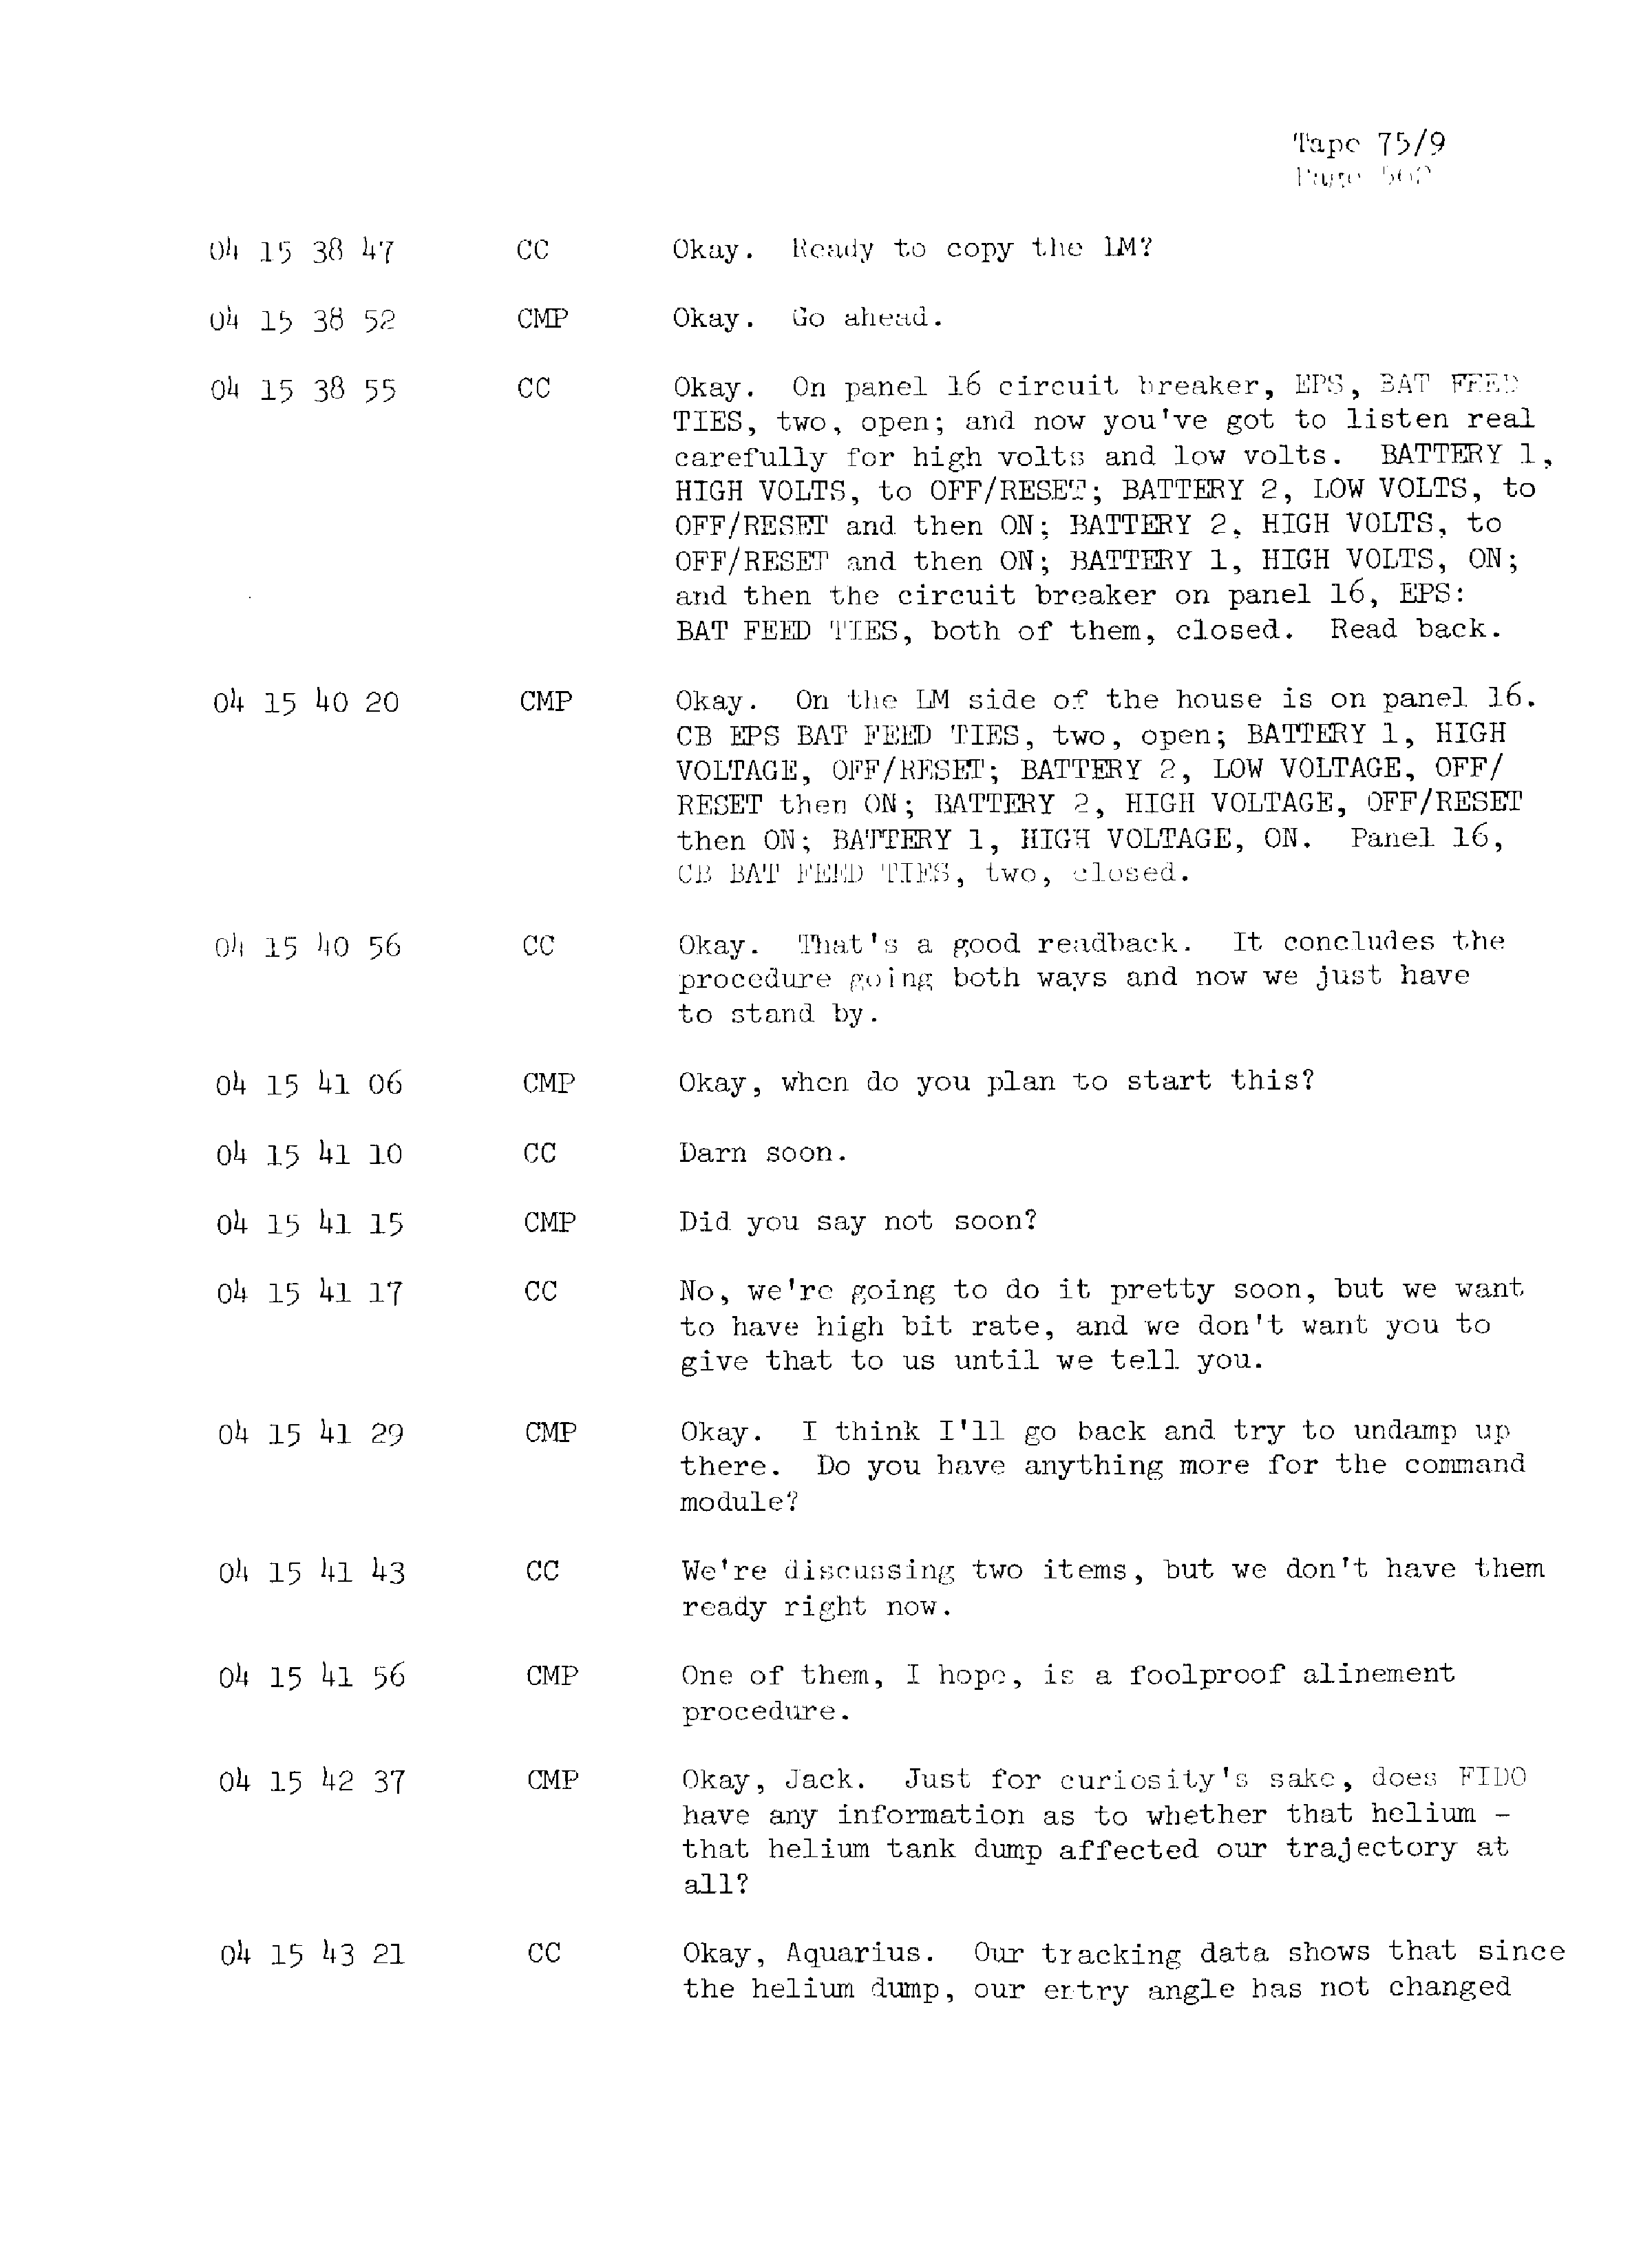 Page 569 of Apollo 13’s original transcript